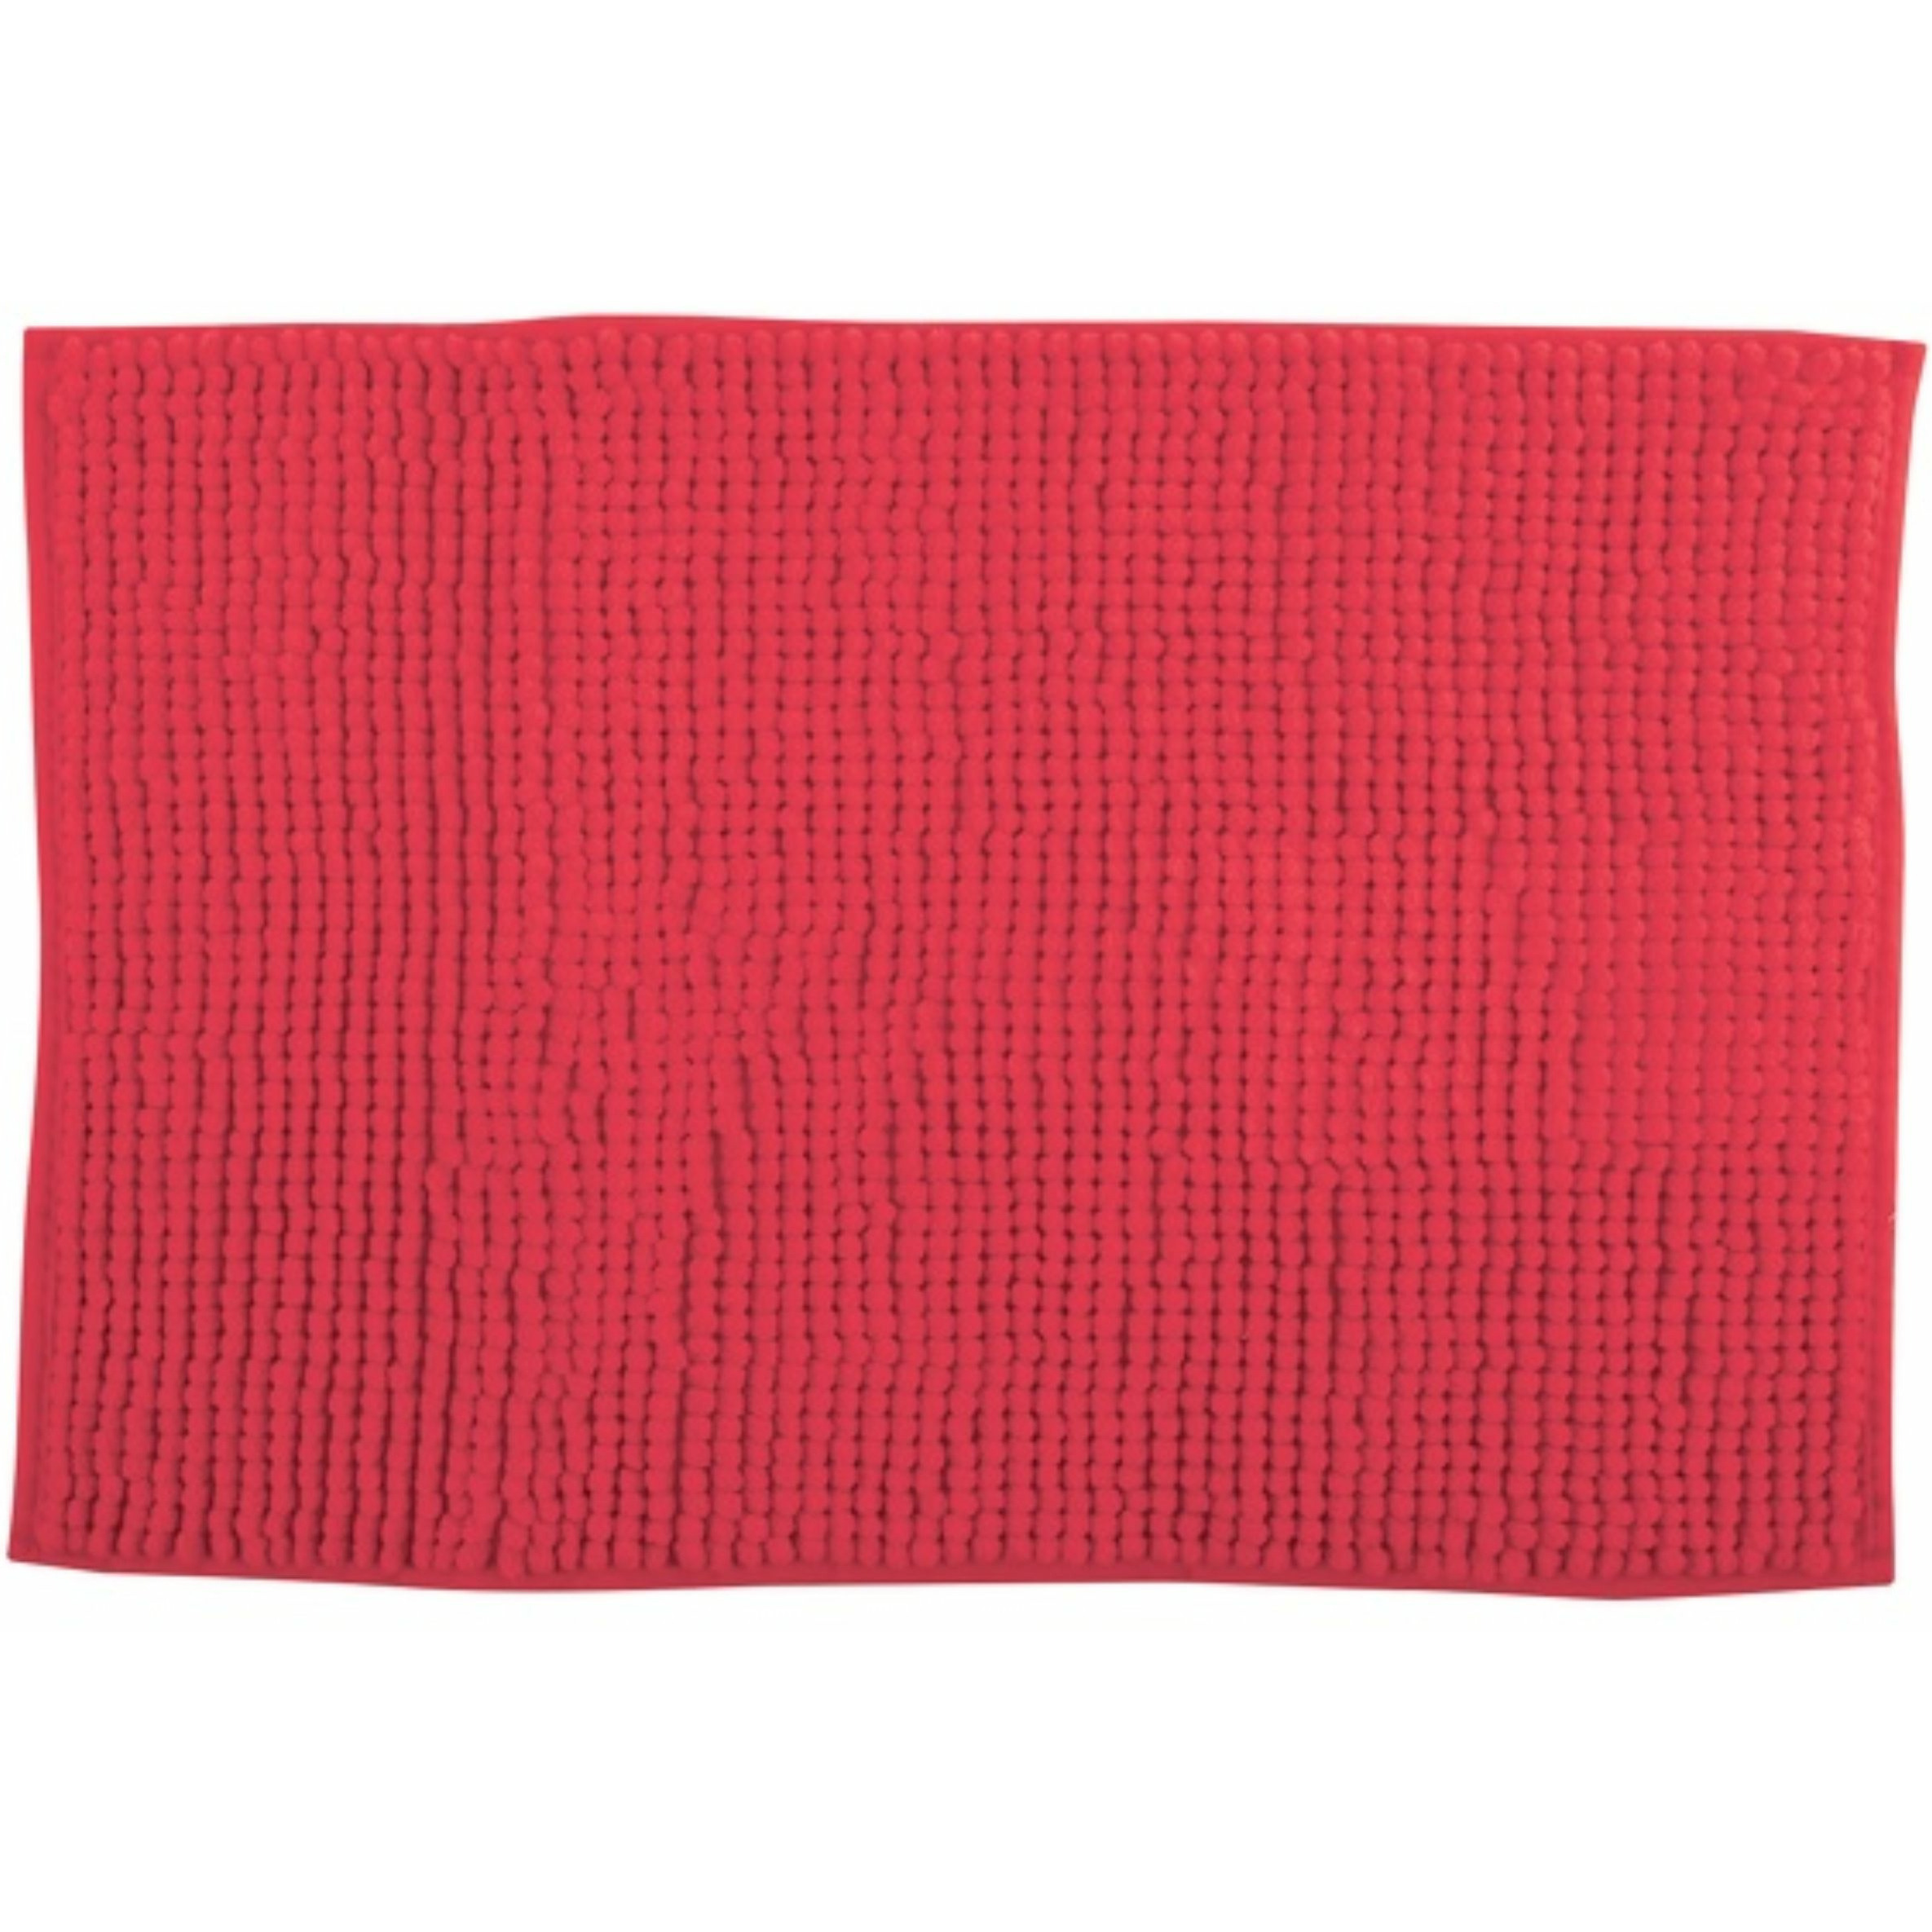 Badkamerkleedje-badmat tapijt voor op de vloer rood 60 x 90 cm